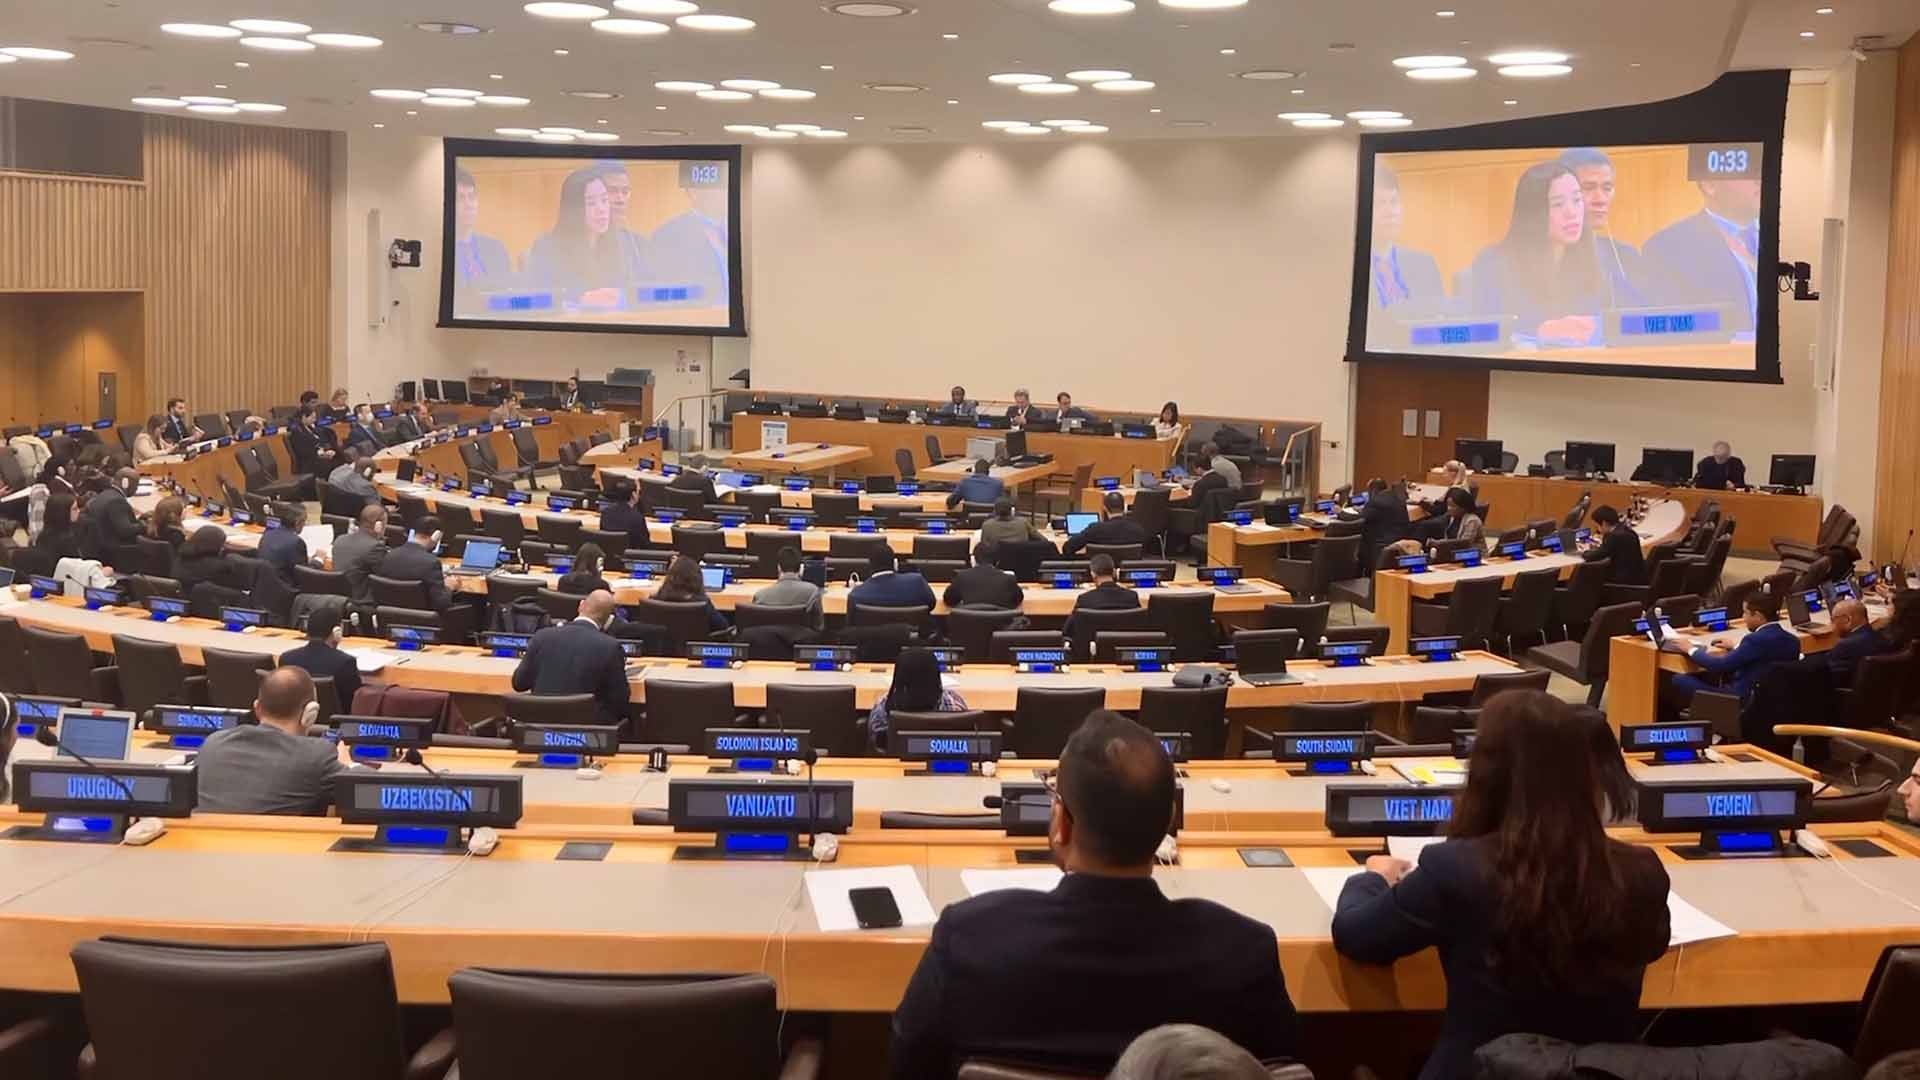 Phiên họp định kỳ hằng năm của Ủy ban đặc biệt về Hiến chương Liên Hợp quốc đã bắt đầu diễn ra, với sự tham gia của đại diện hơn 80 quốc gia thành viên.